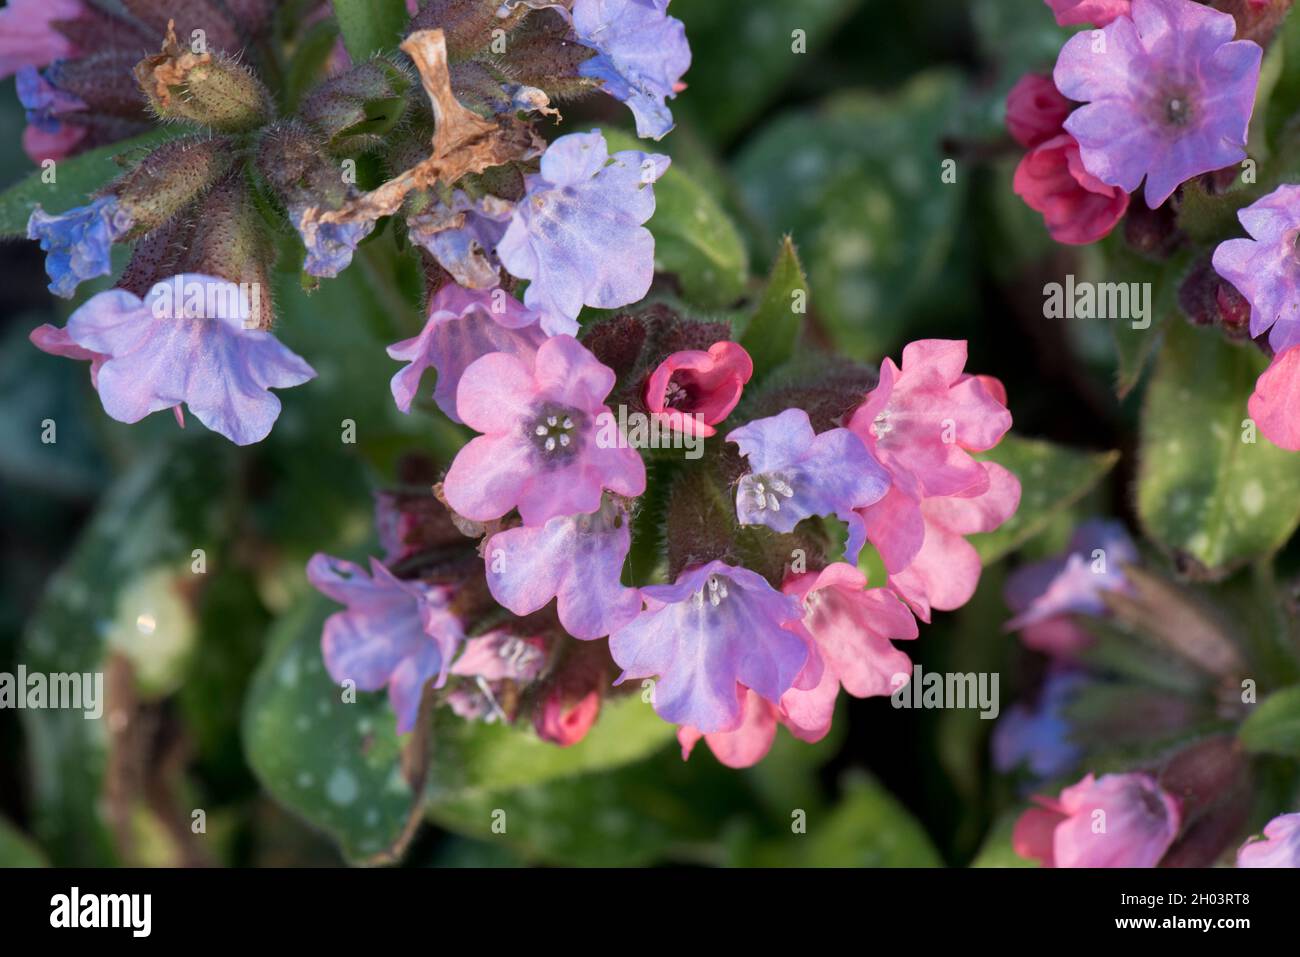 Il lungwort (Pulmonaria officinalis) fiori blu, lilla e rosa tra le foglie macchiate su questa pianta giardino, Berkshire, marzo Foto Stock